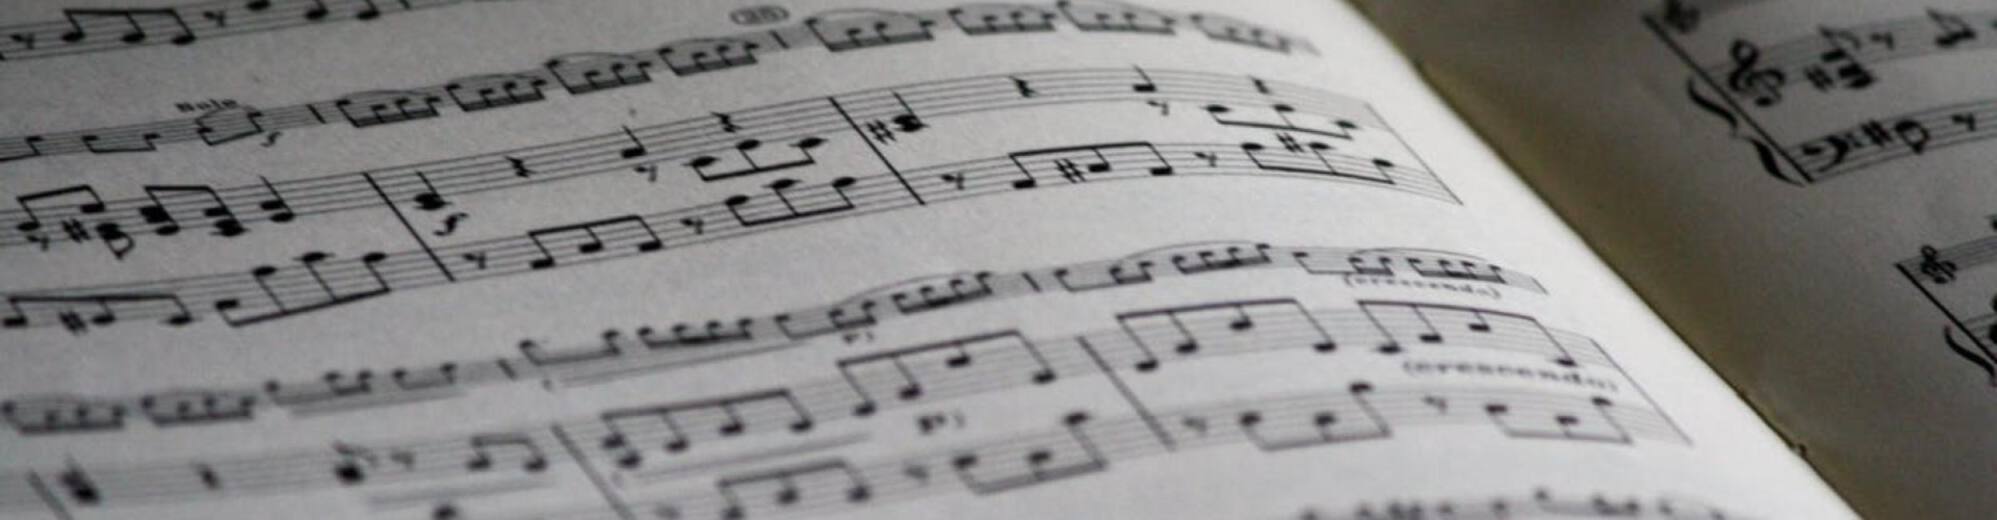 Music Teacher Resume: Sample & Writing Guide [20+ Tips]